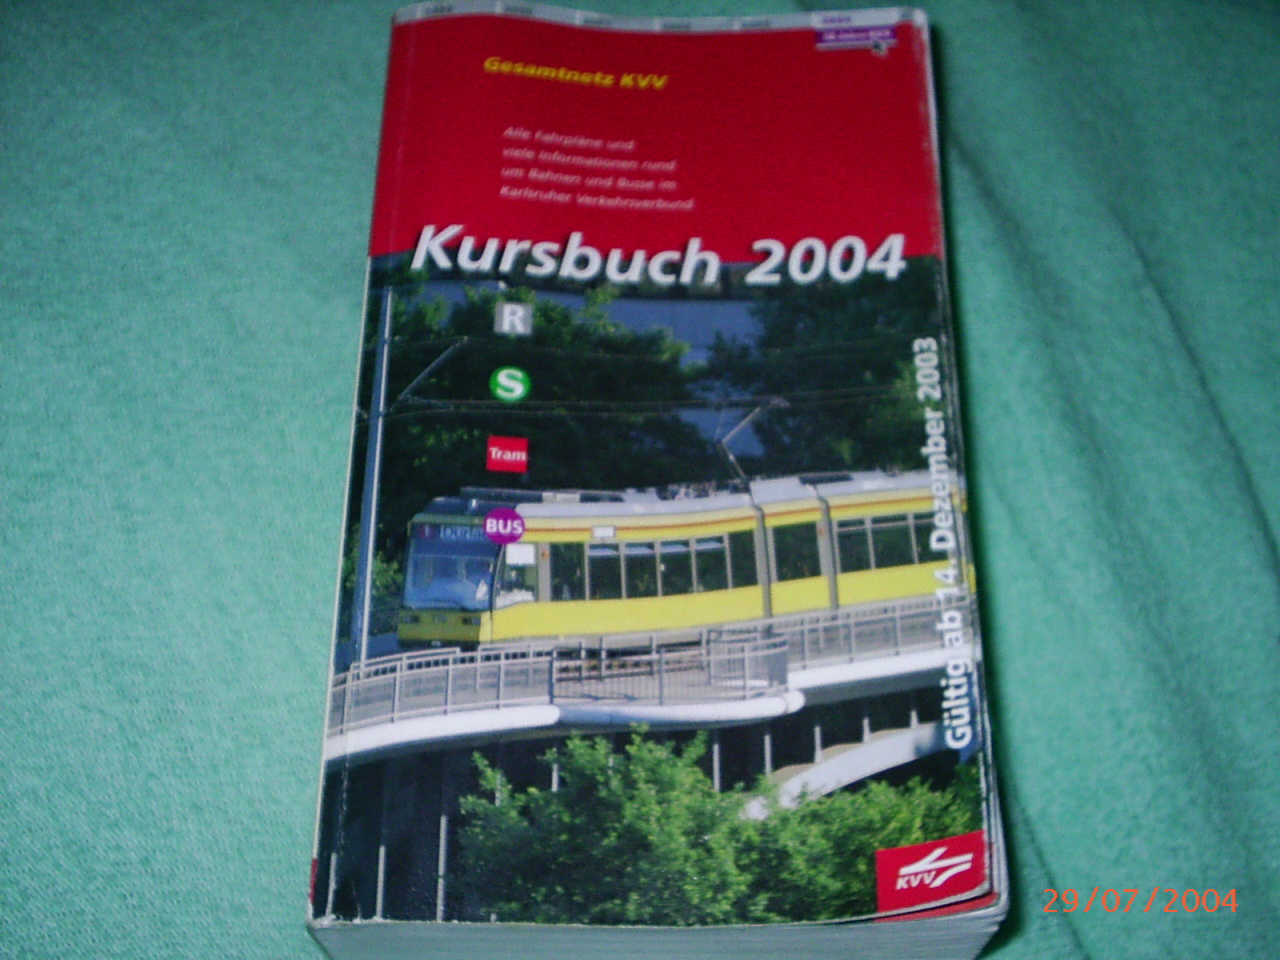 Kursbuch 2004